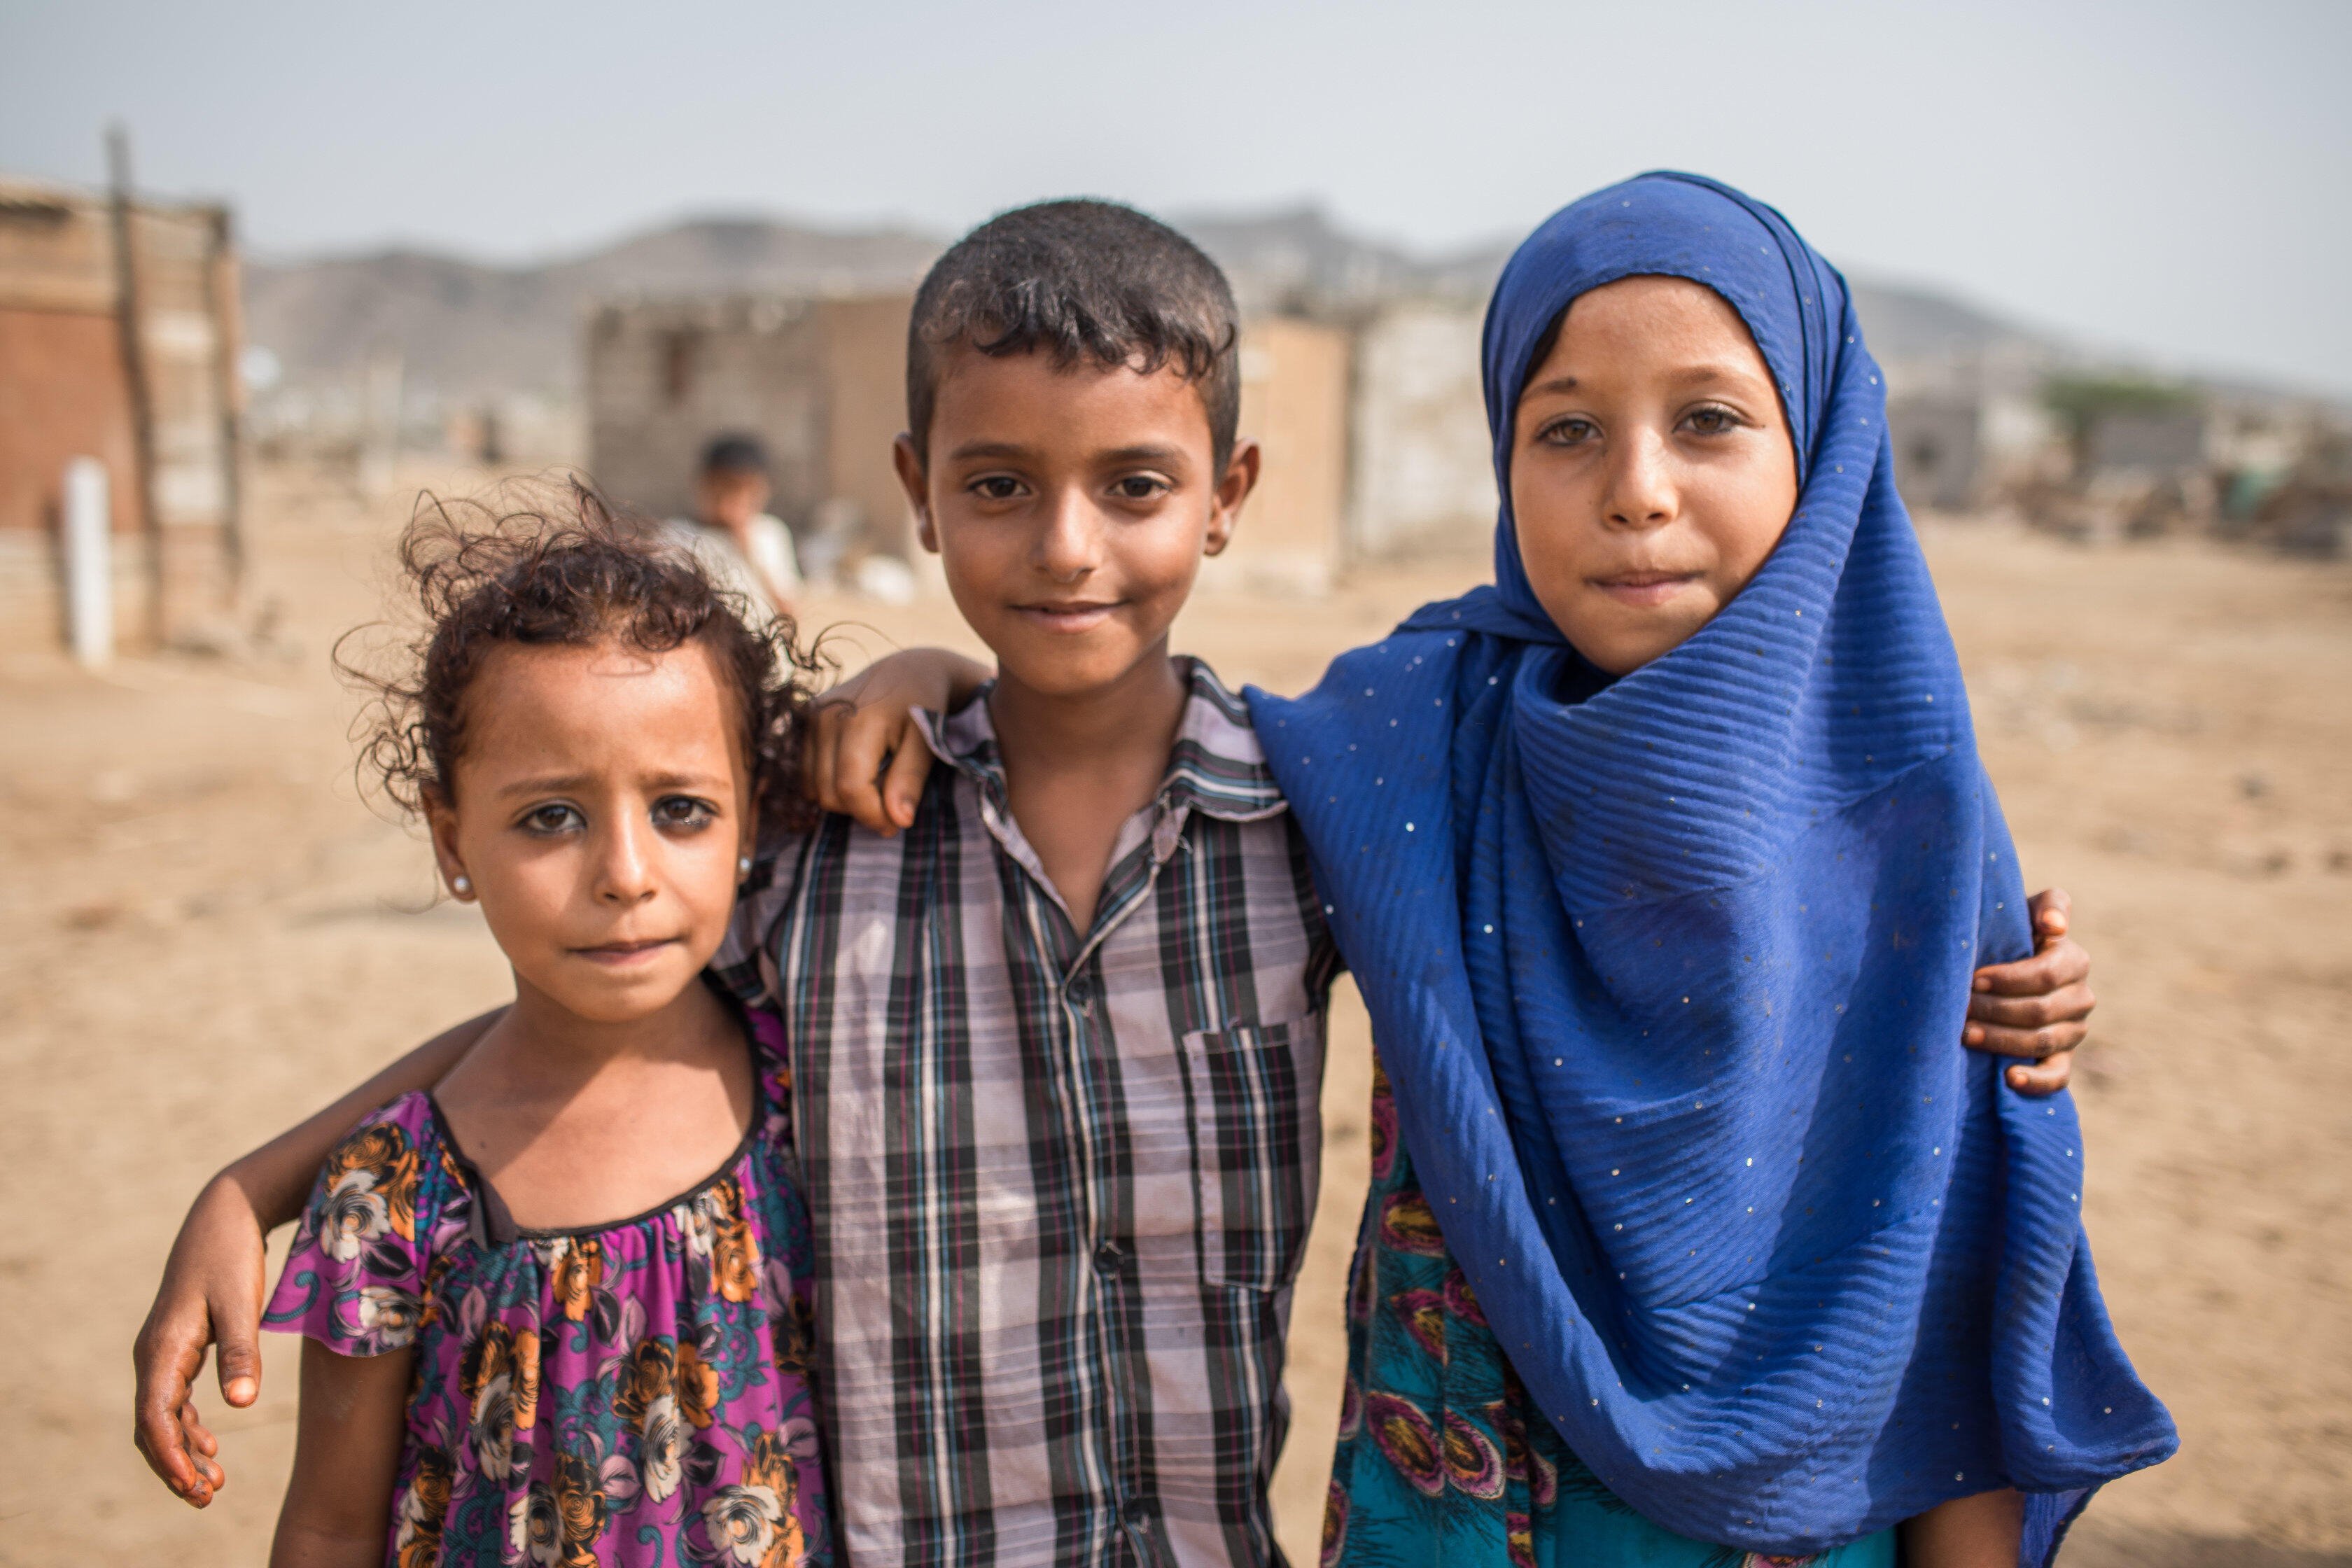 Three children in a remote village in Yemen